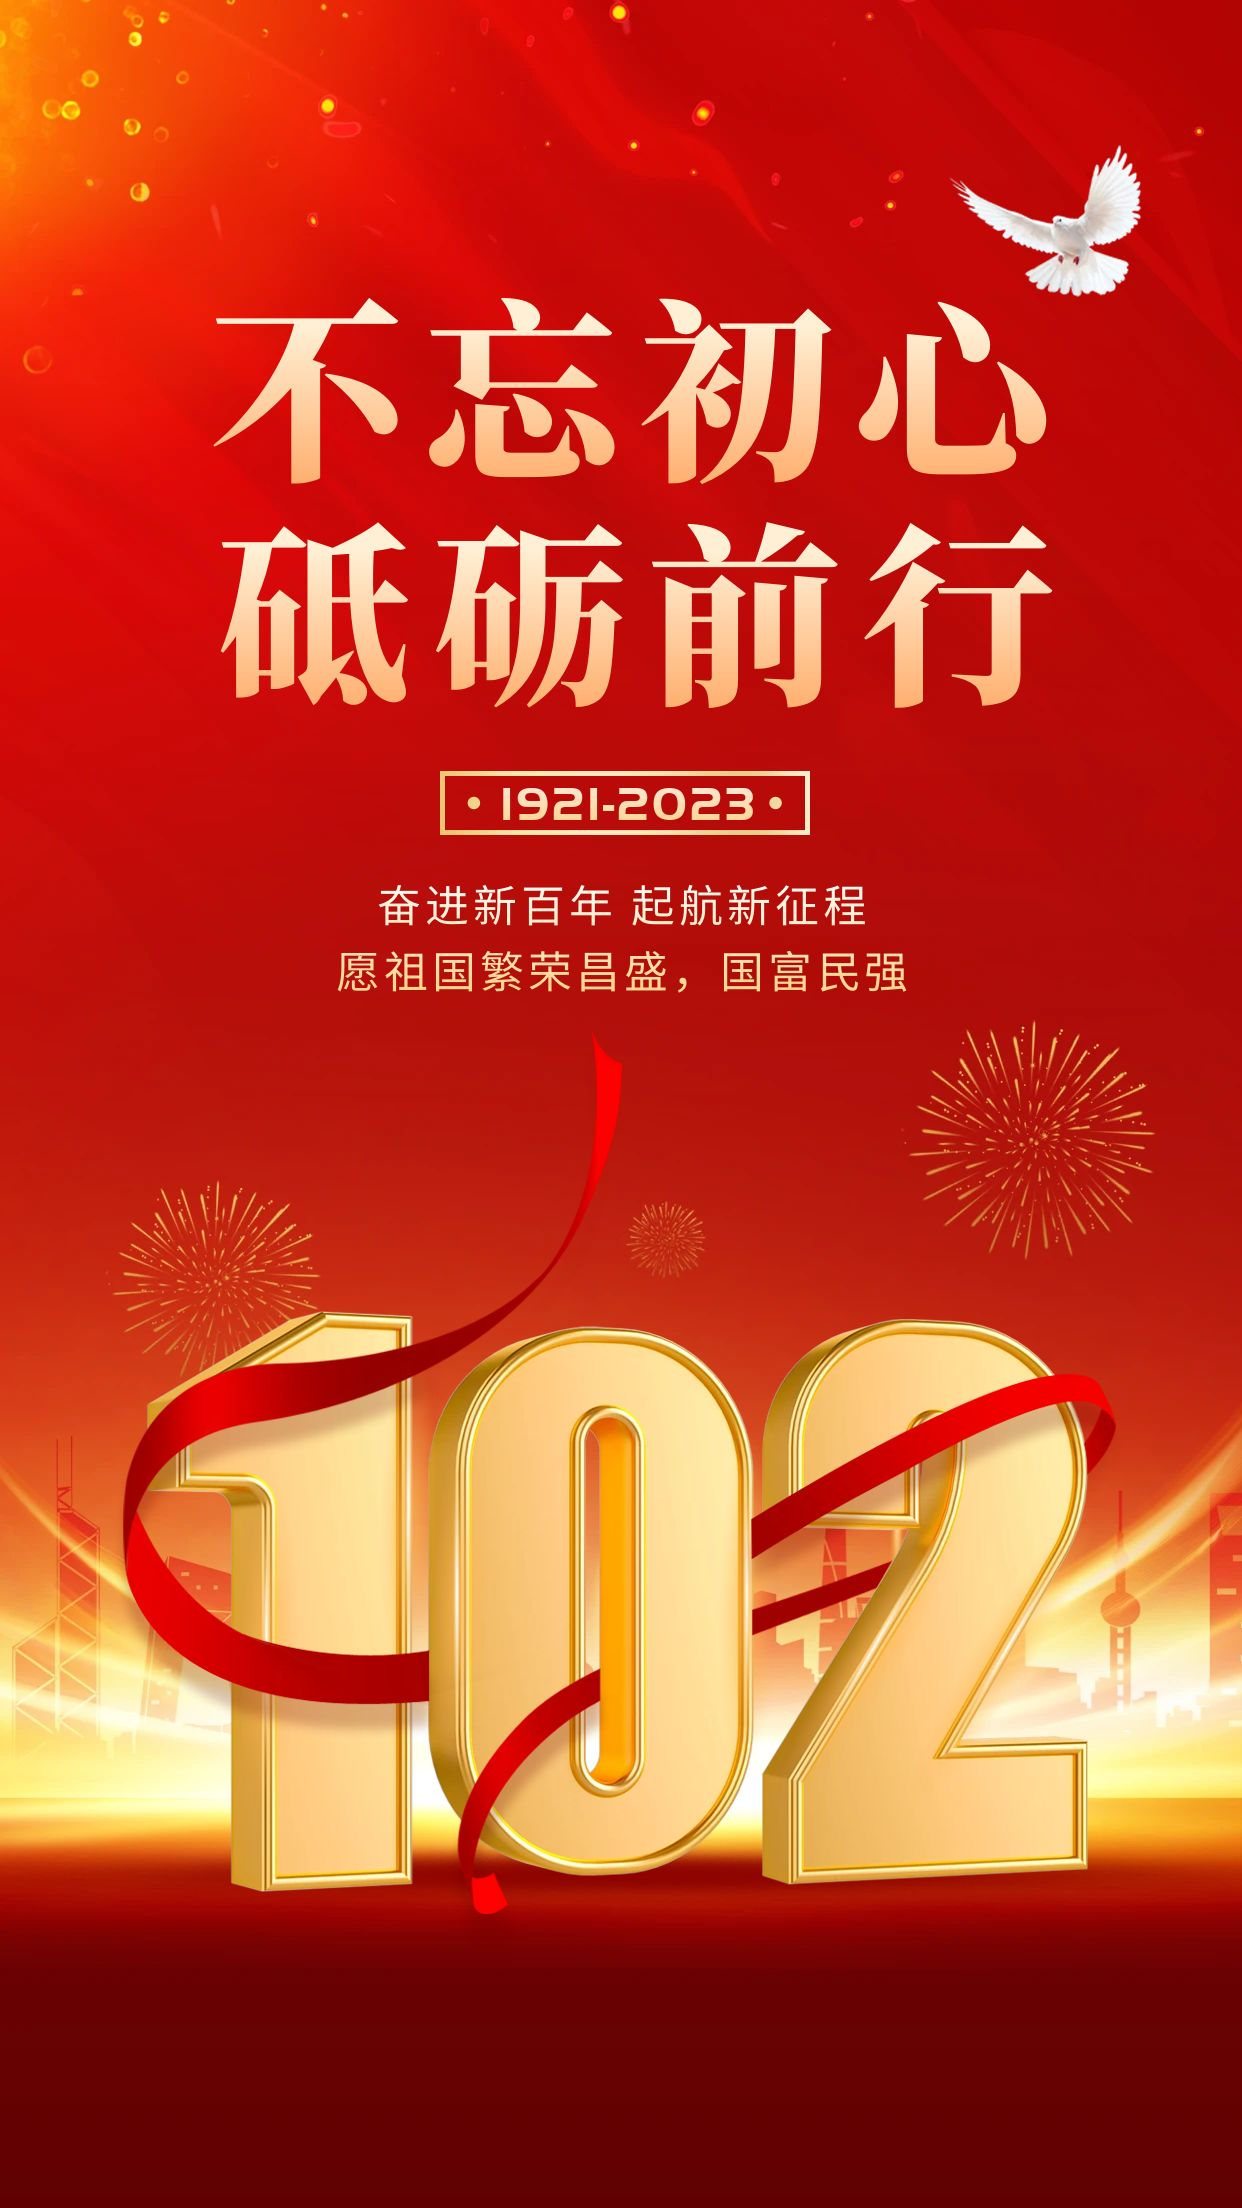 热烈庆祝中国共产党建党102周年